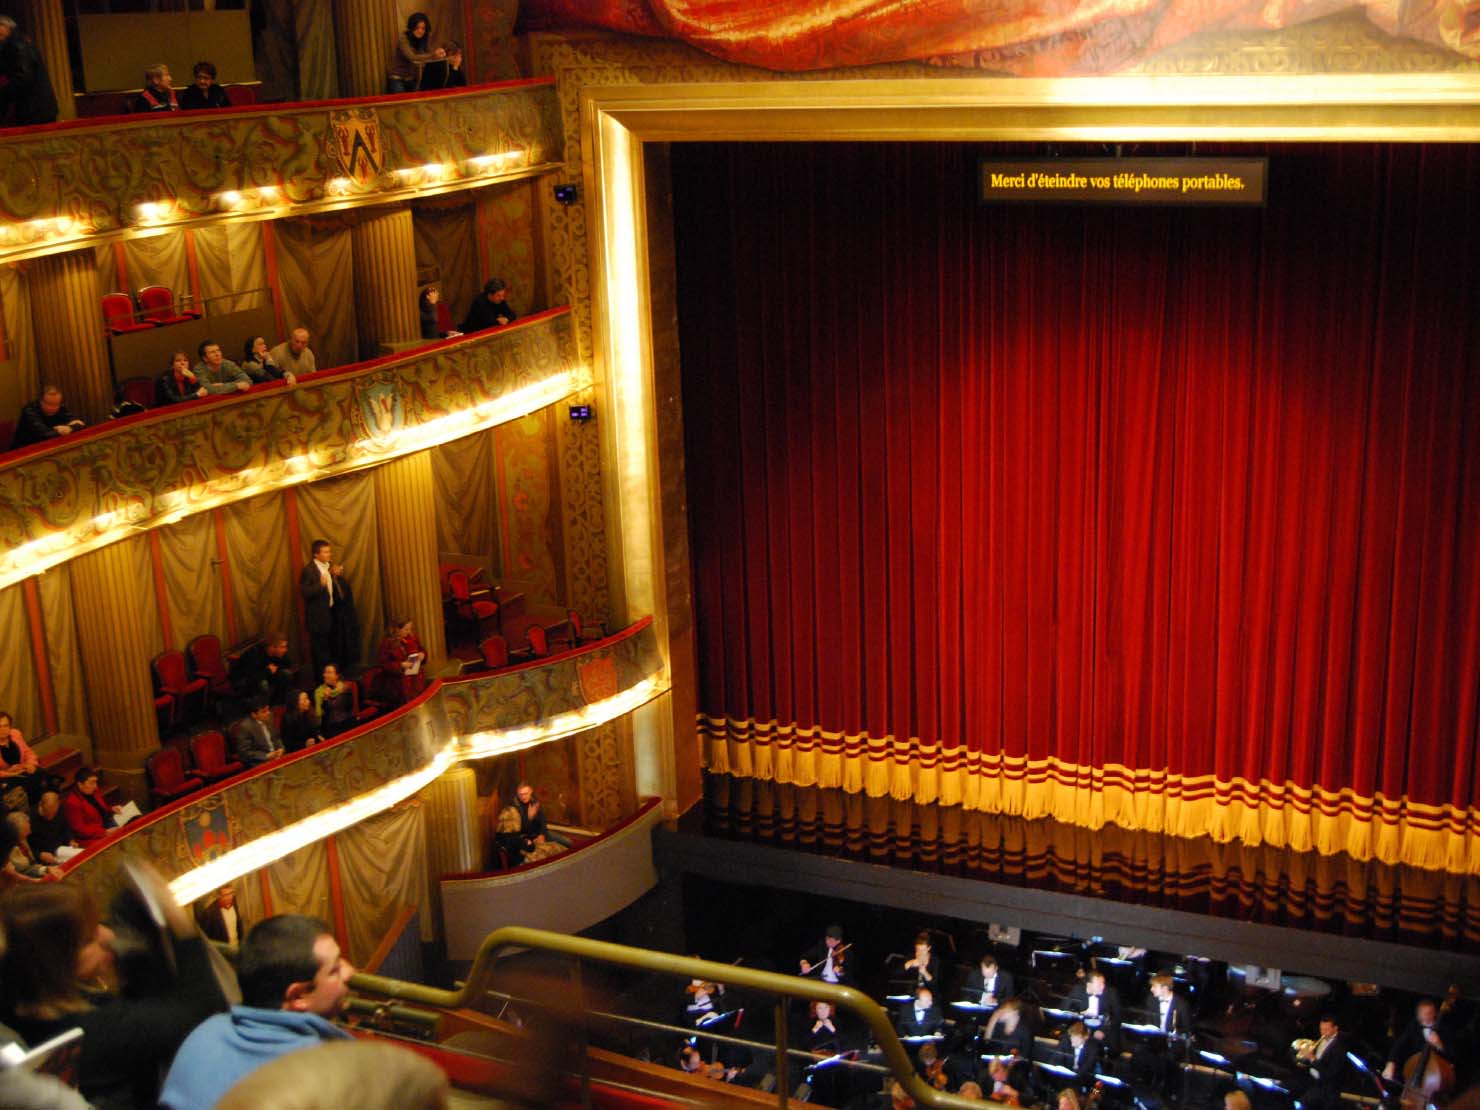 オペラの際はオーケストラはオーケストラピットと呼ばれる、舞台手前に設けられた奈落の中（地下的な空間）で演奏しますので、上向きに音が広がります